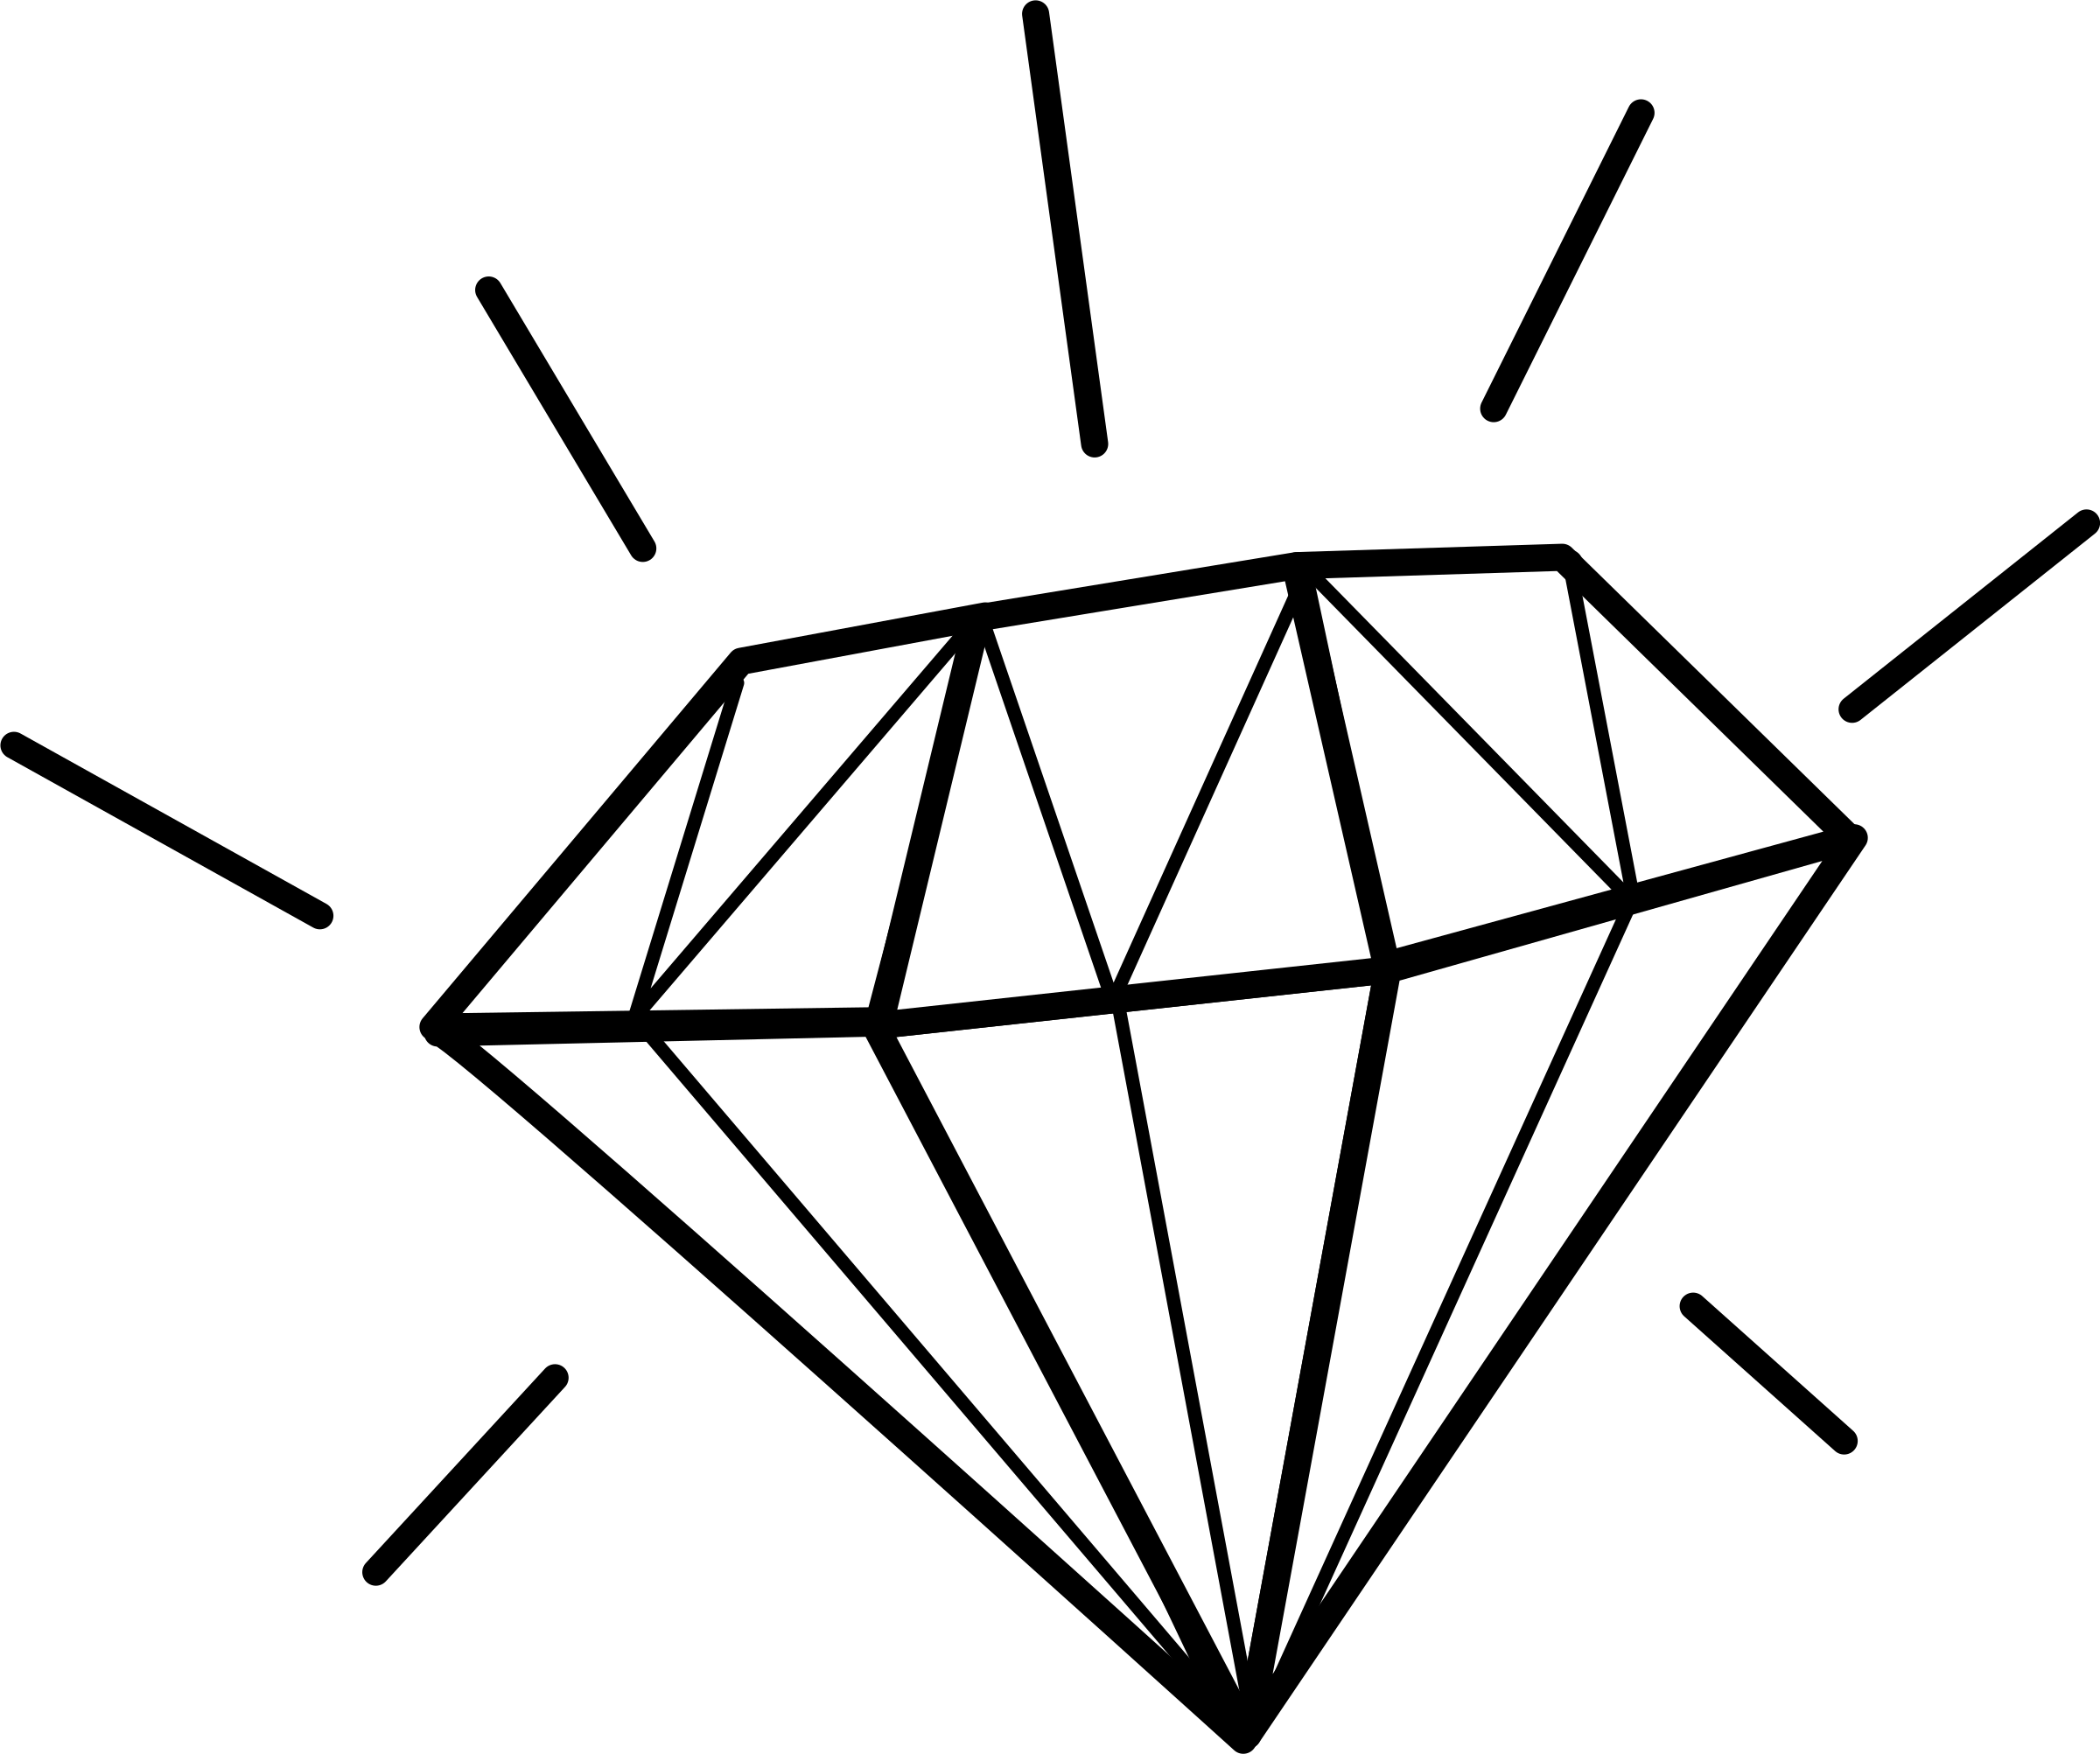 diamond vector art